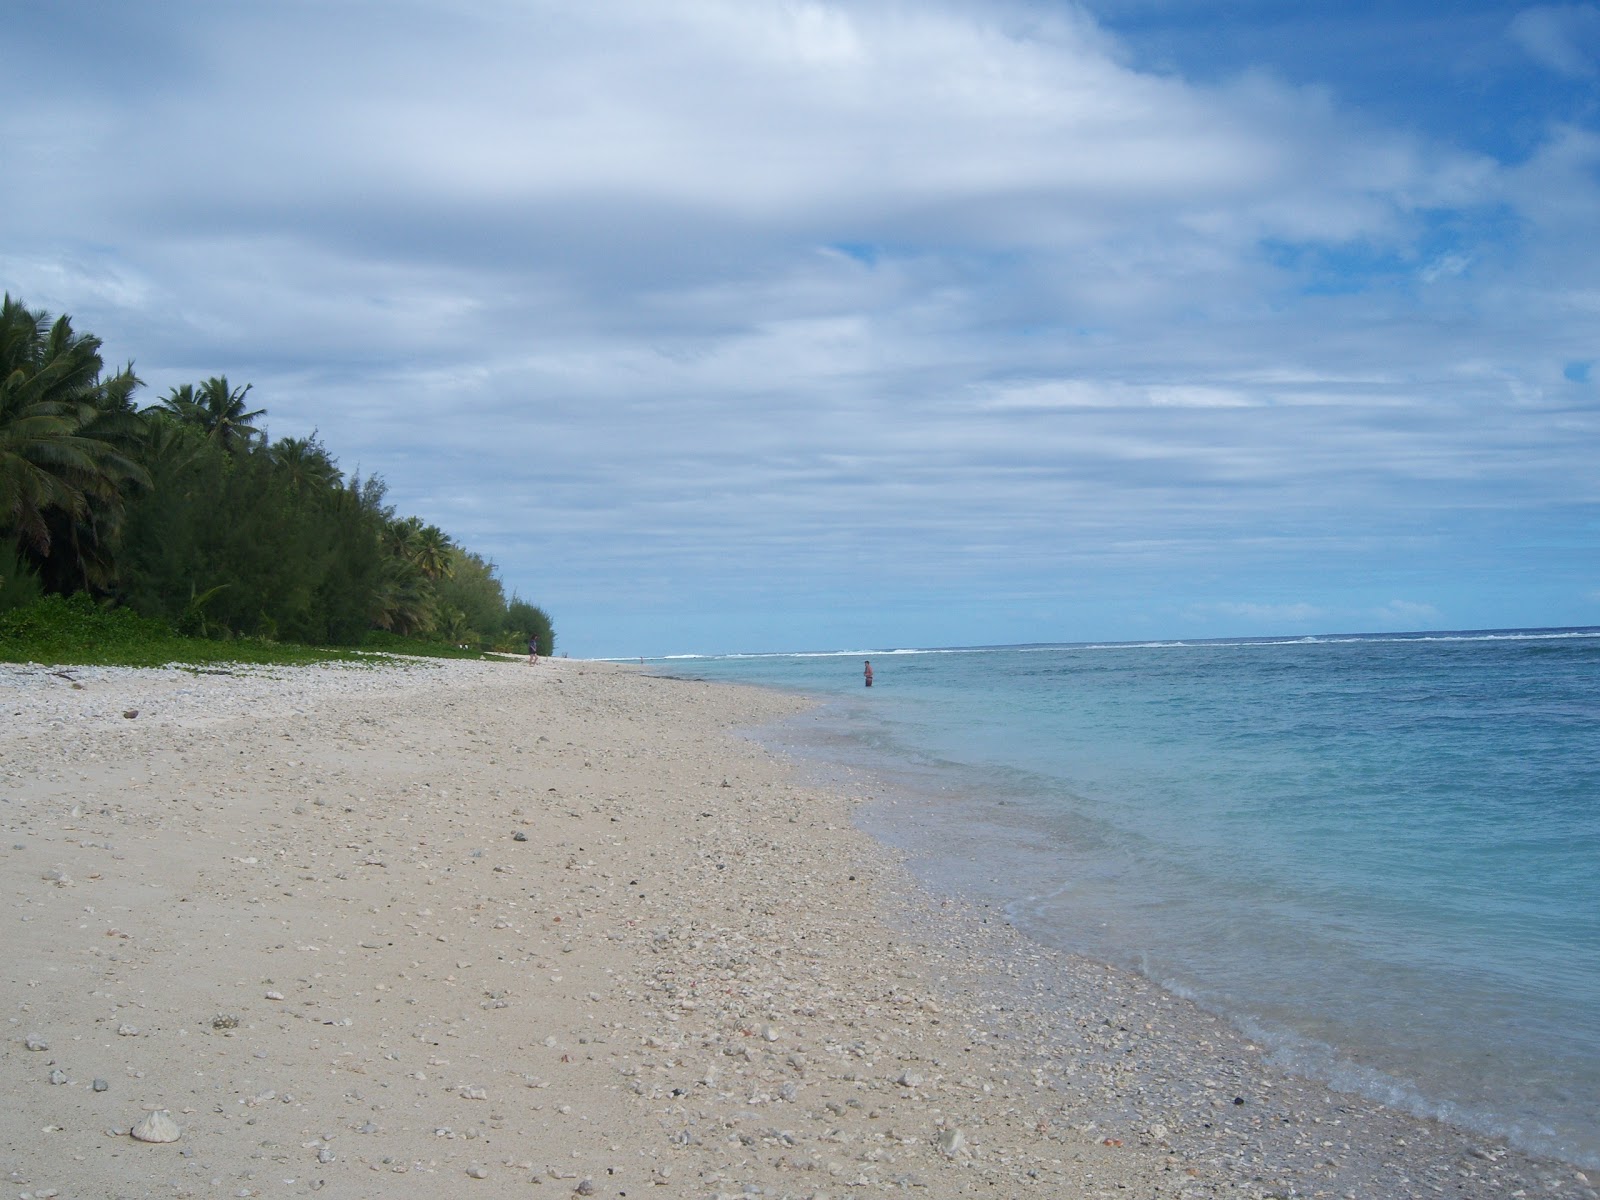 Zdjęcie Tokerau Beach - popularne miejsce wśród znawców relaksu